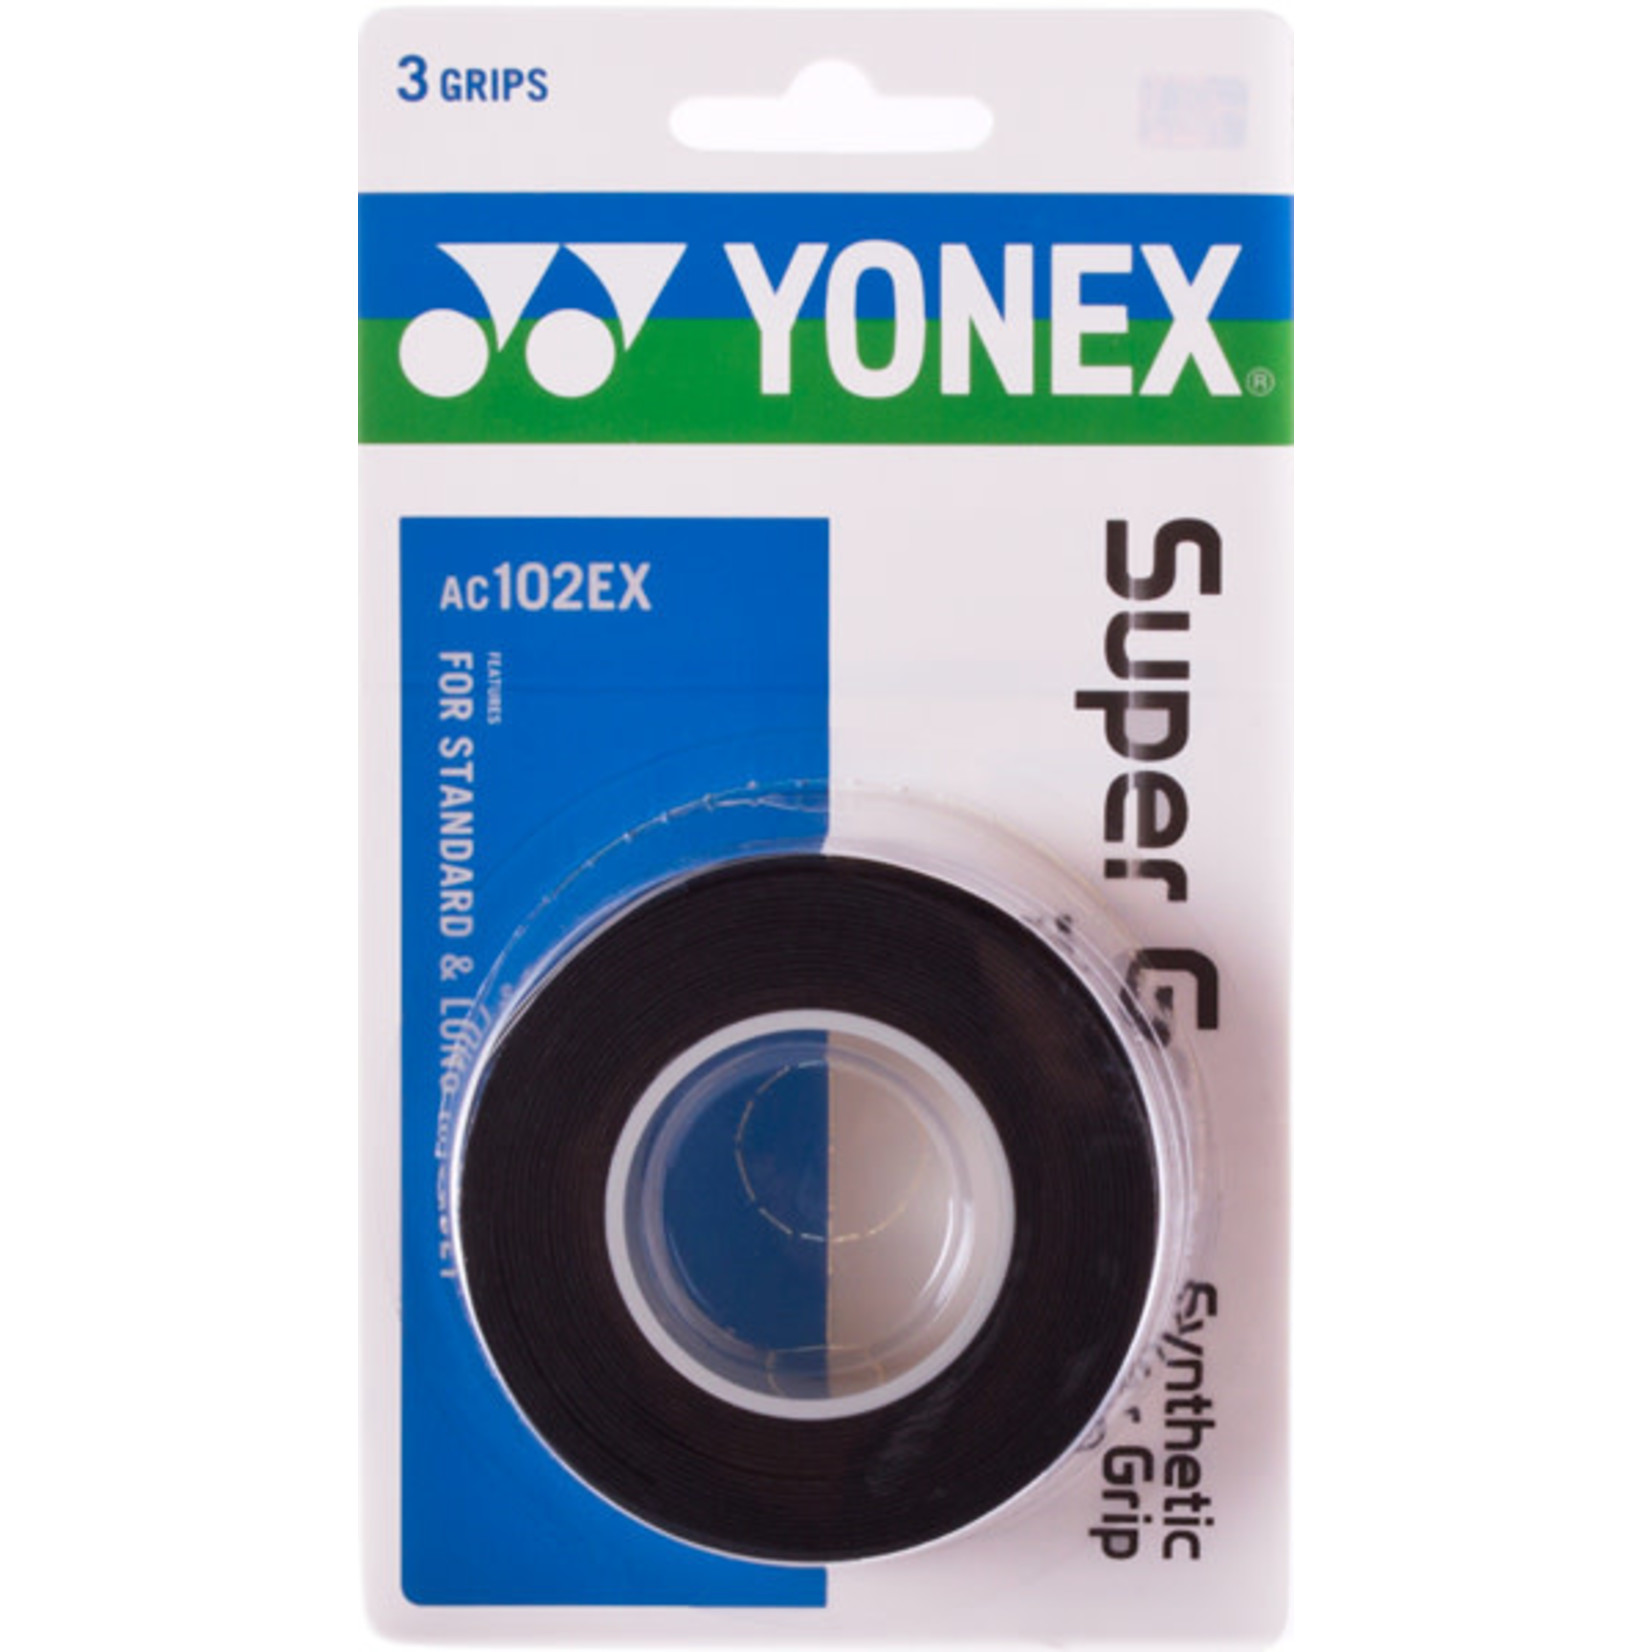 Yonex Yonex Super Grap Overgrips - Black